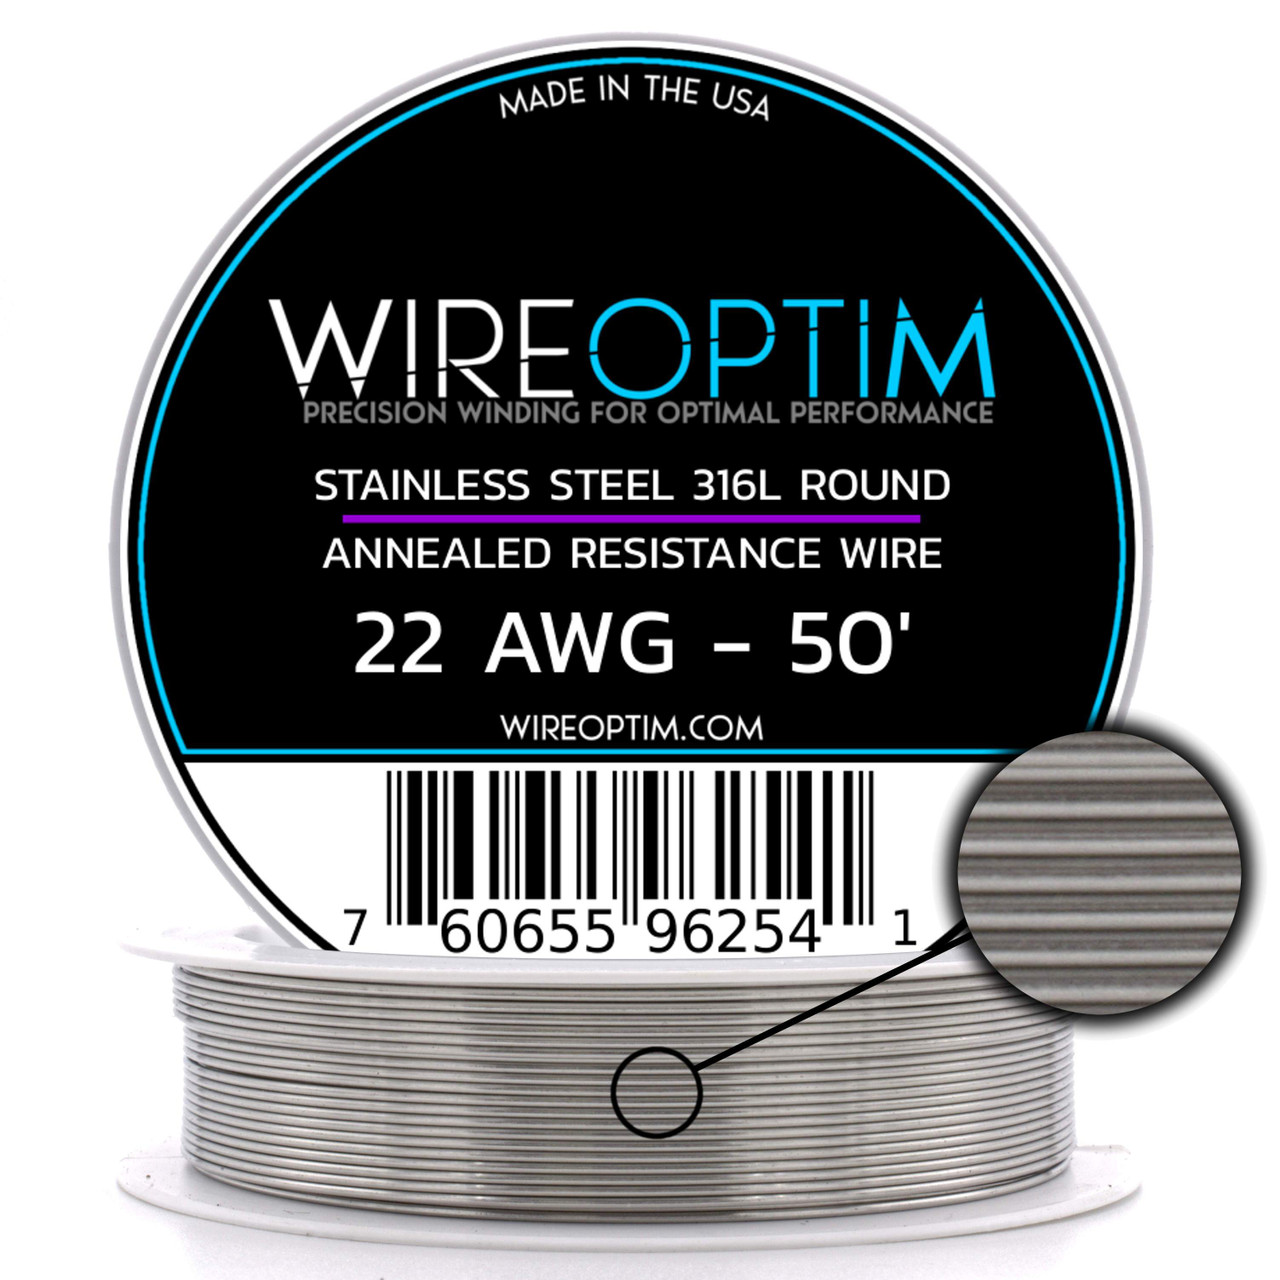 Annoteren dienen Vermindering Stainless Steel 316L Round Wire - WIREOPTIM